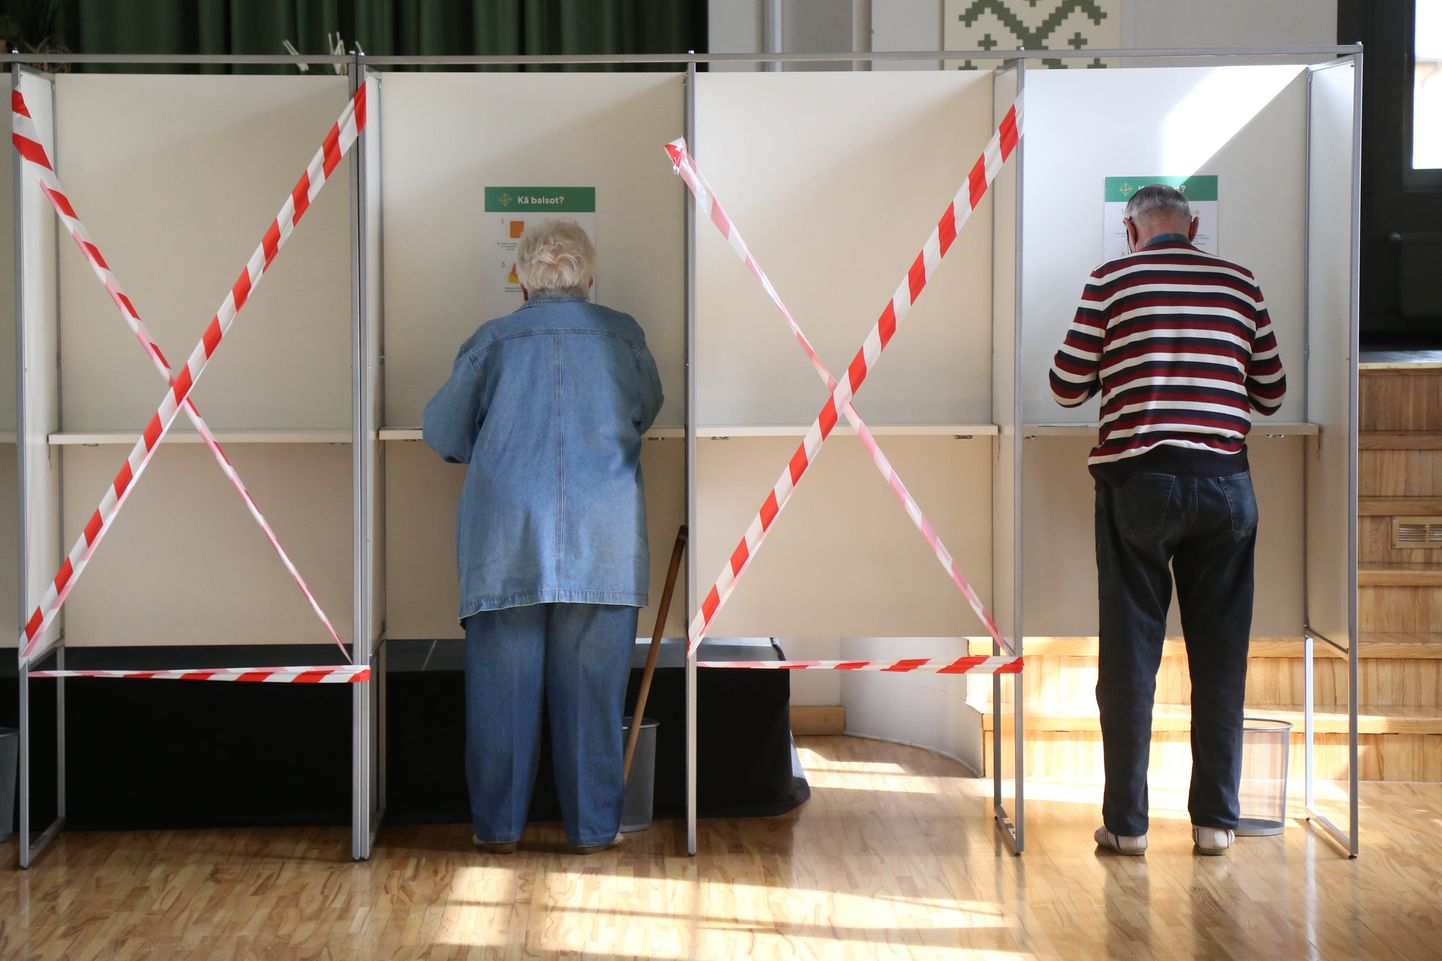 790.vēlēšanu iecirknī Mārupes kultūras namā notiek priekšējā balsošana pašvaldību vēlēšanās.